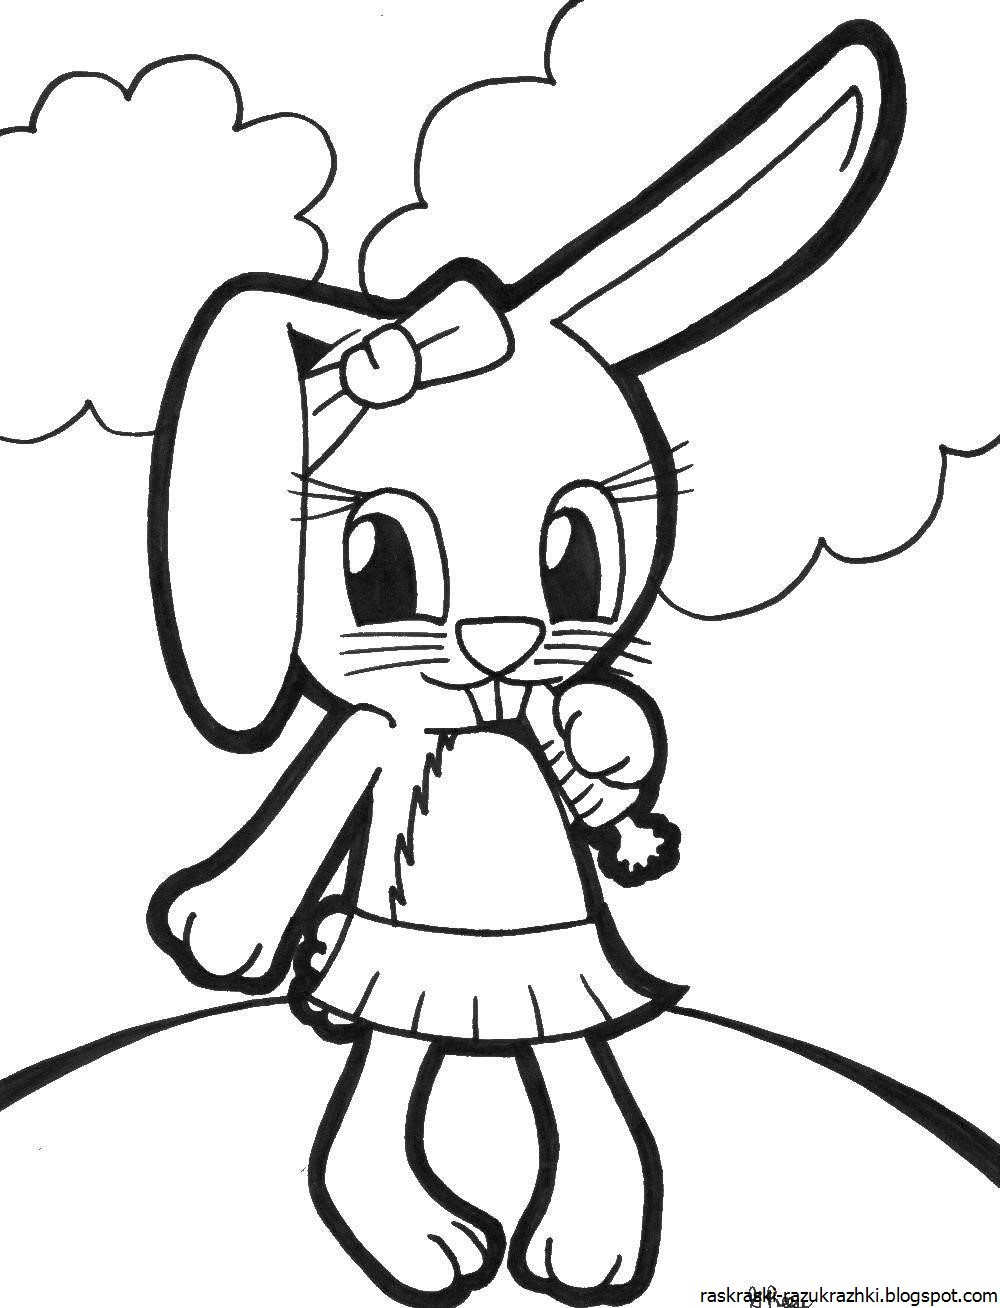 Раскраска для девочек зайчики. Раскраска «Зайка». Кролик раскраска. Кролик раскраска для детей. Раскраска зайчик с бантиком.